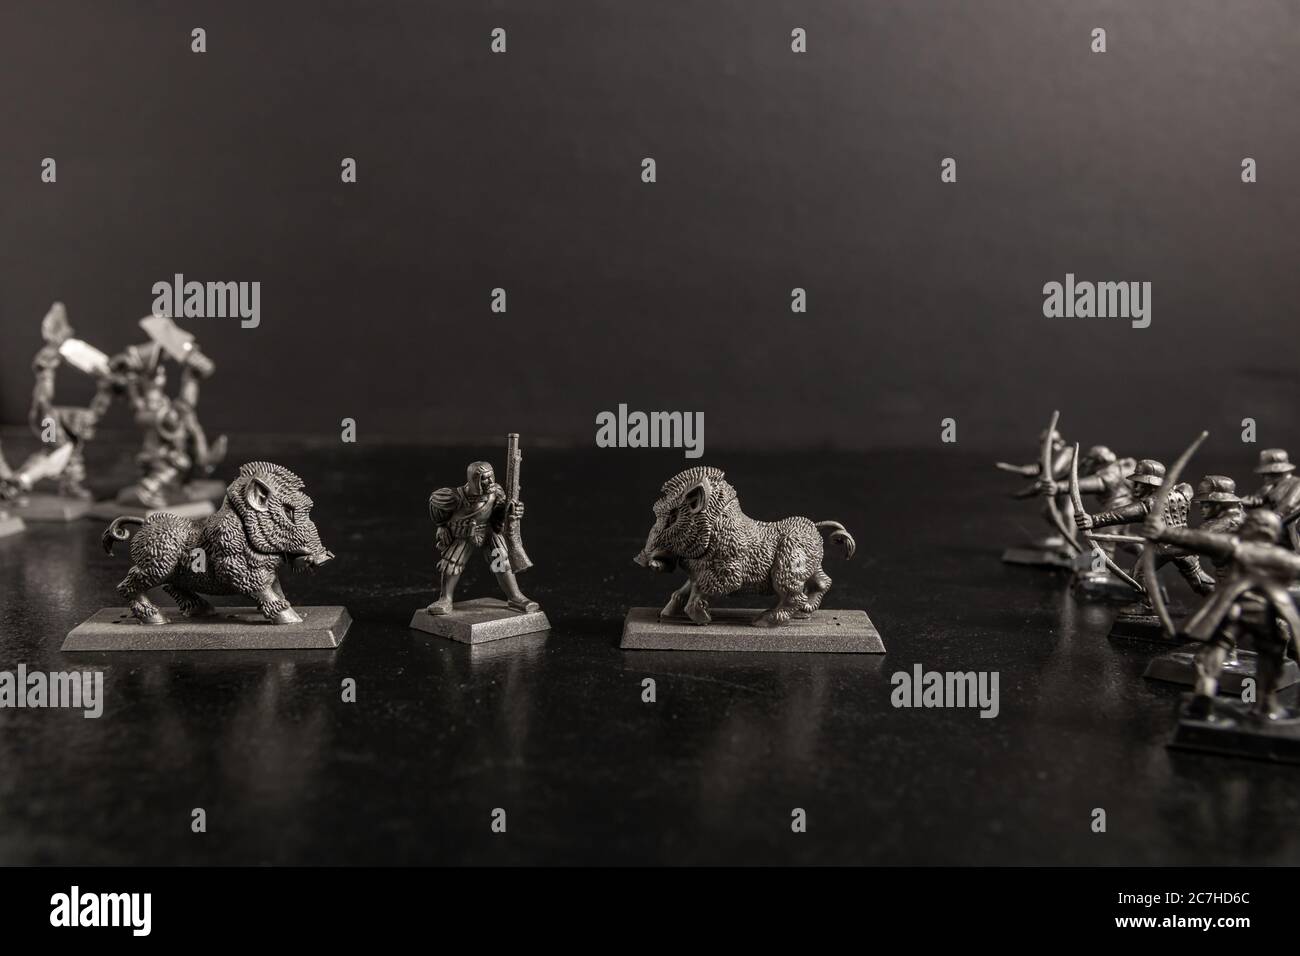 Graustufen selektive Fokus Aufnahme eines Jägers und Wildschweine Figuren Stockfoto